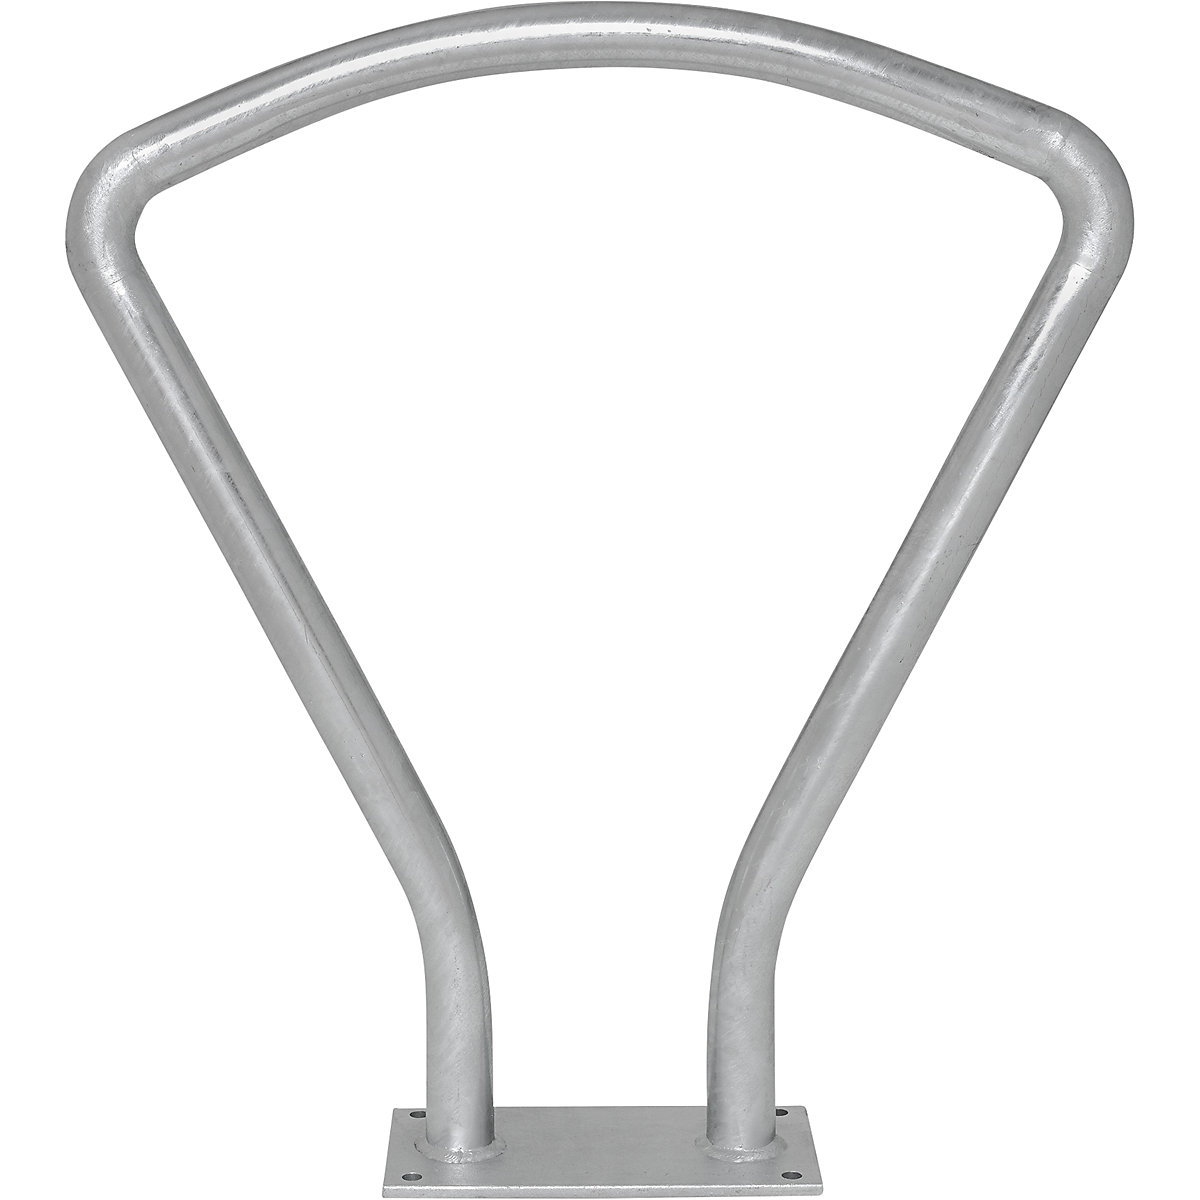 Arco de apoyo VUELTA, poste fijo de 70 x 70 mm, galvanizado al horno, para atornillar-3